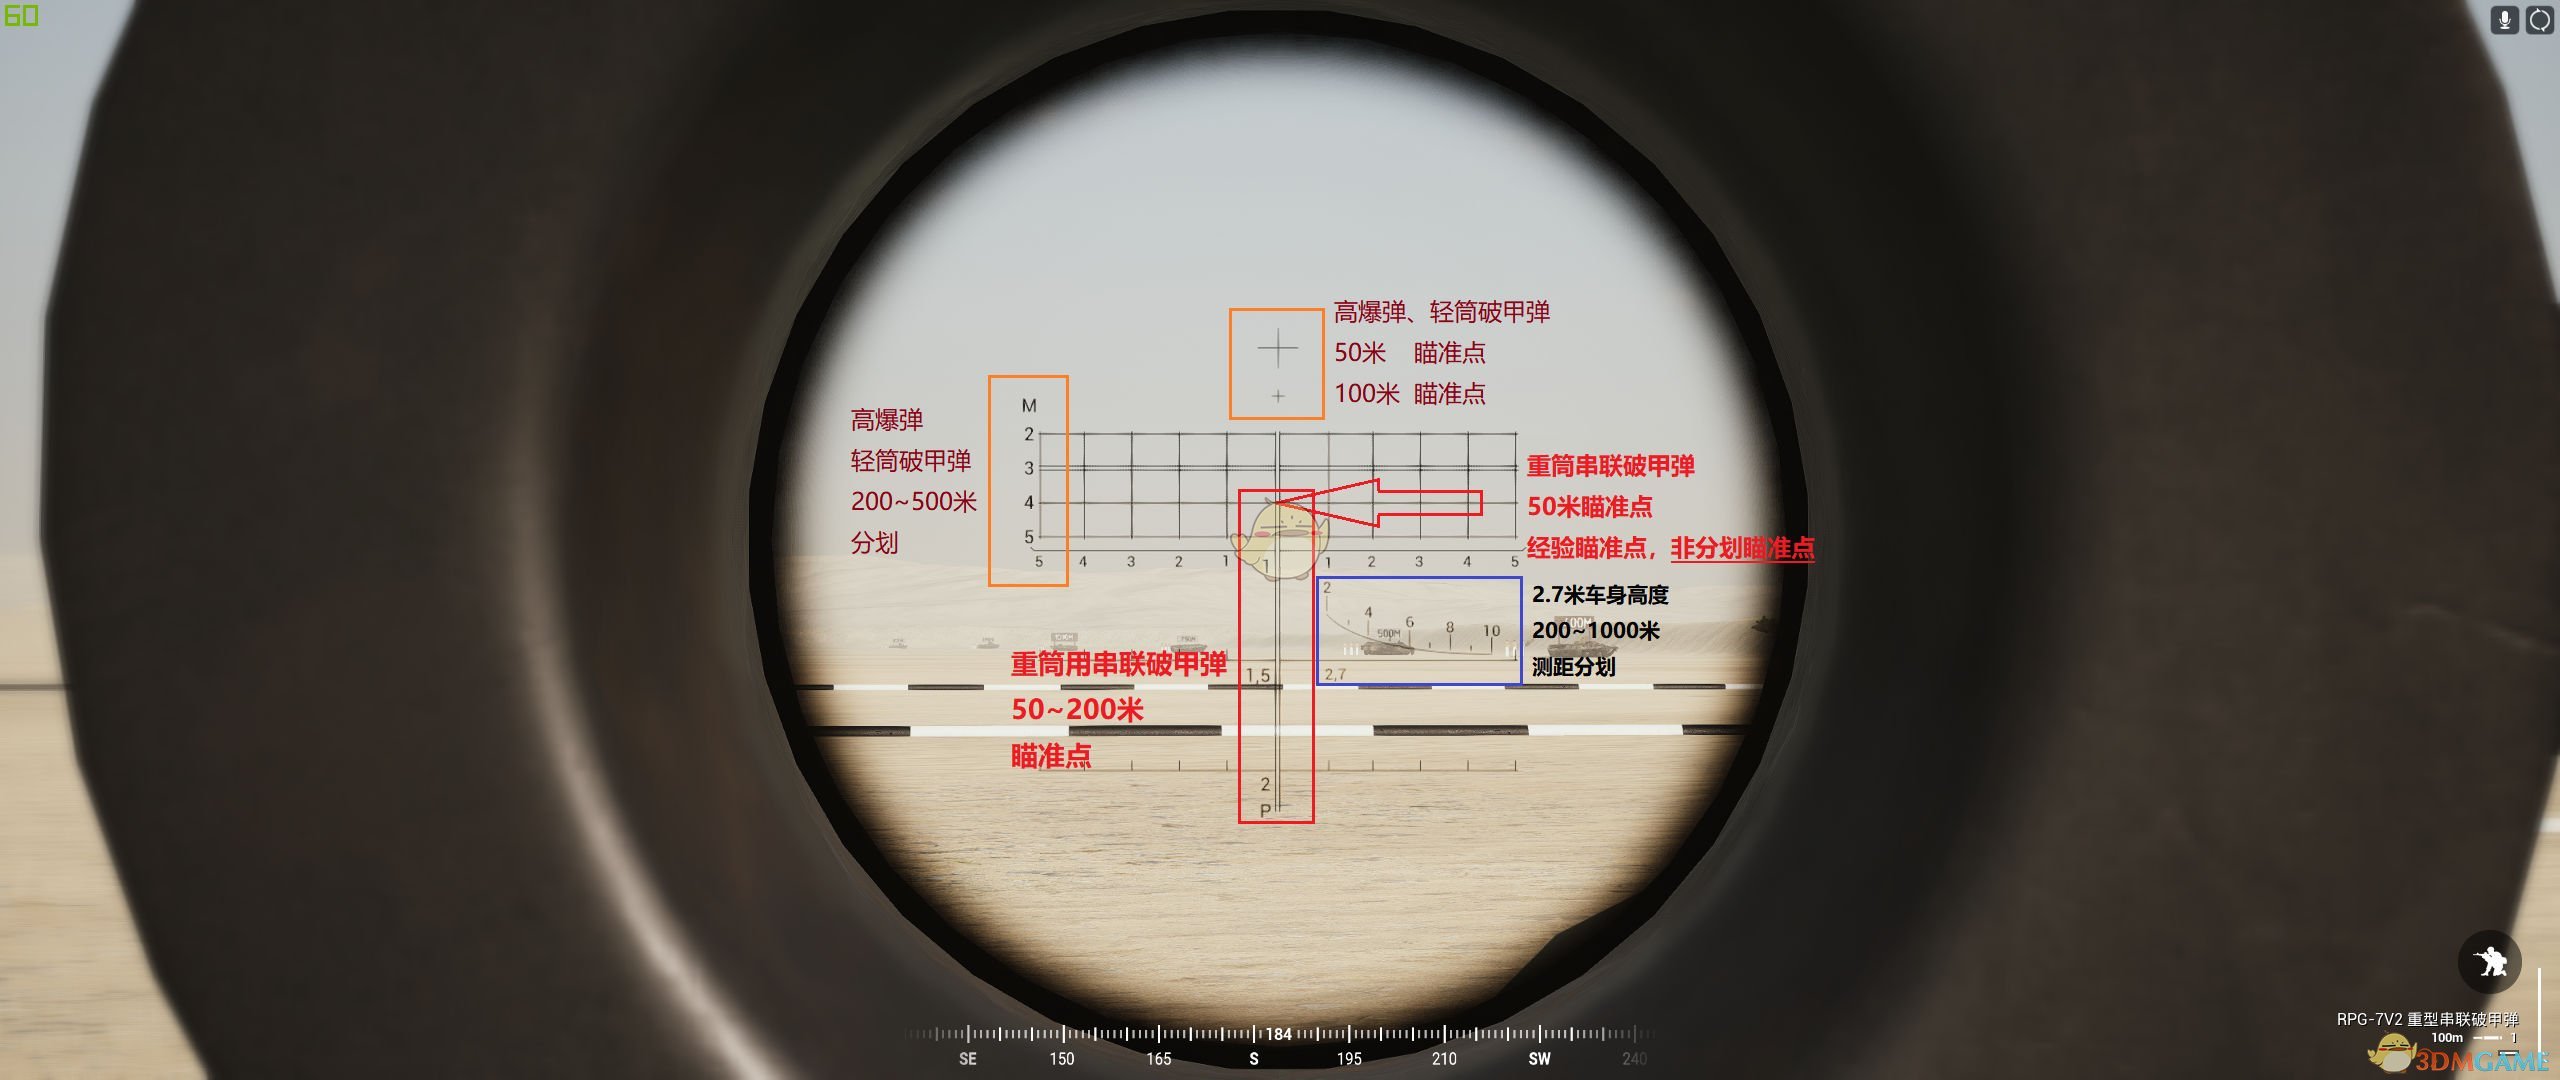 《战术小队》俄军RPG-7瞄准镜使用指南图